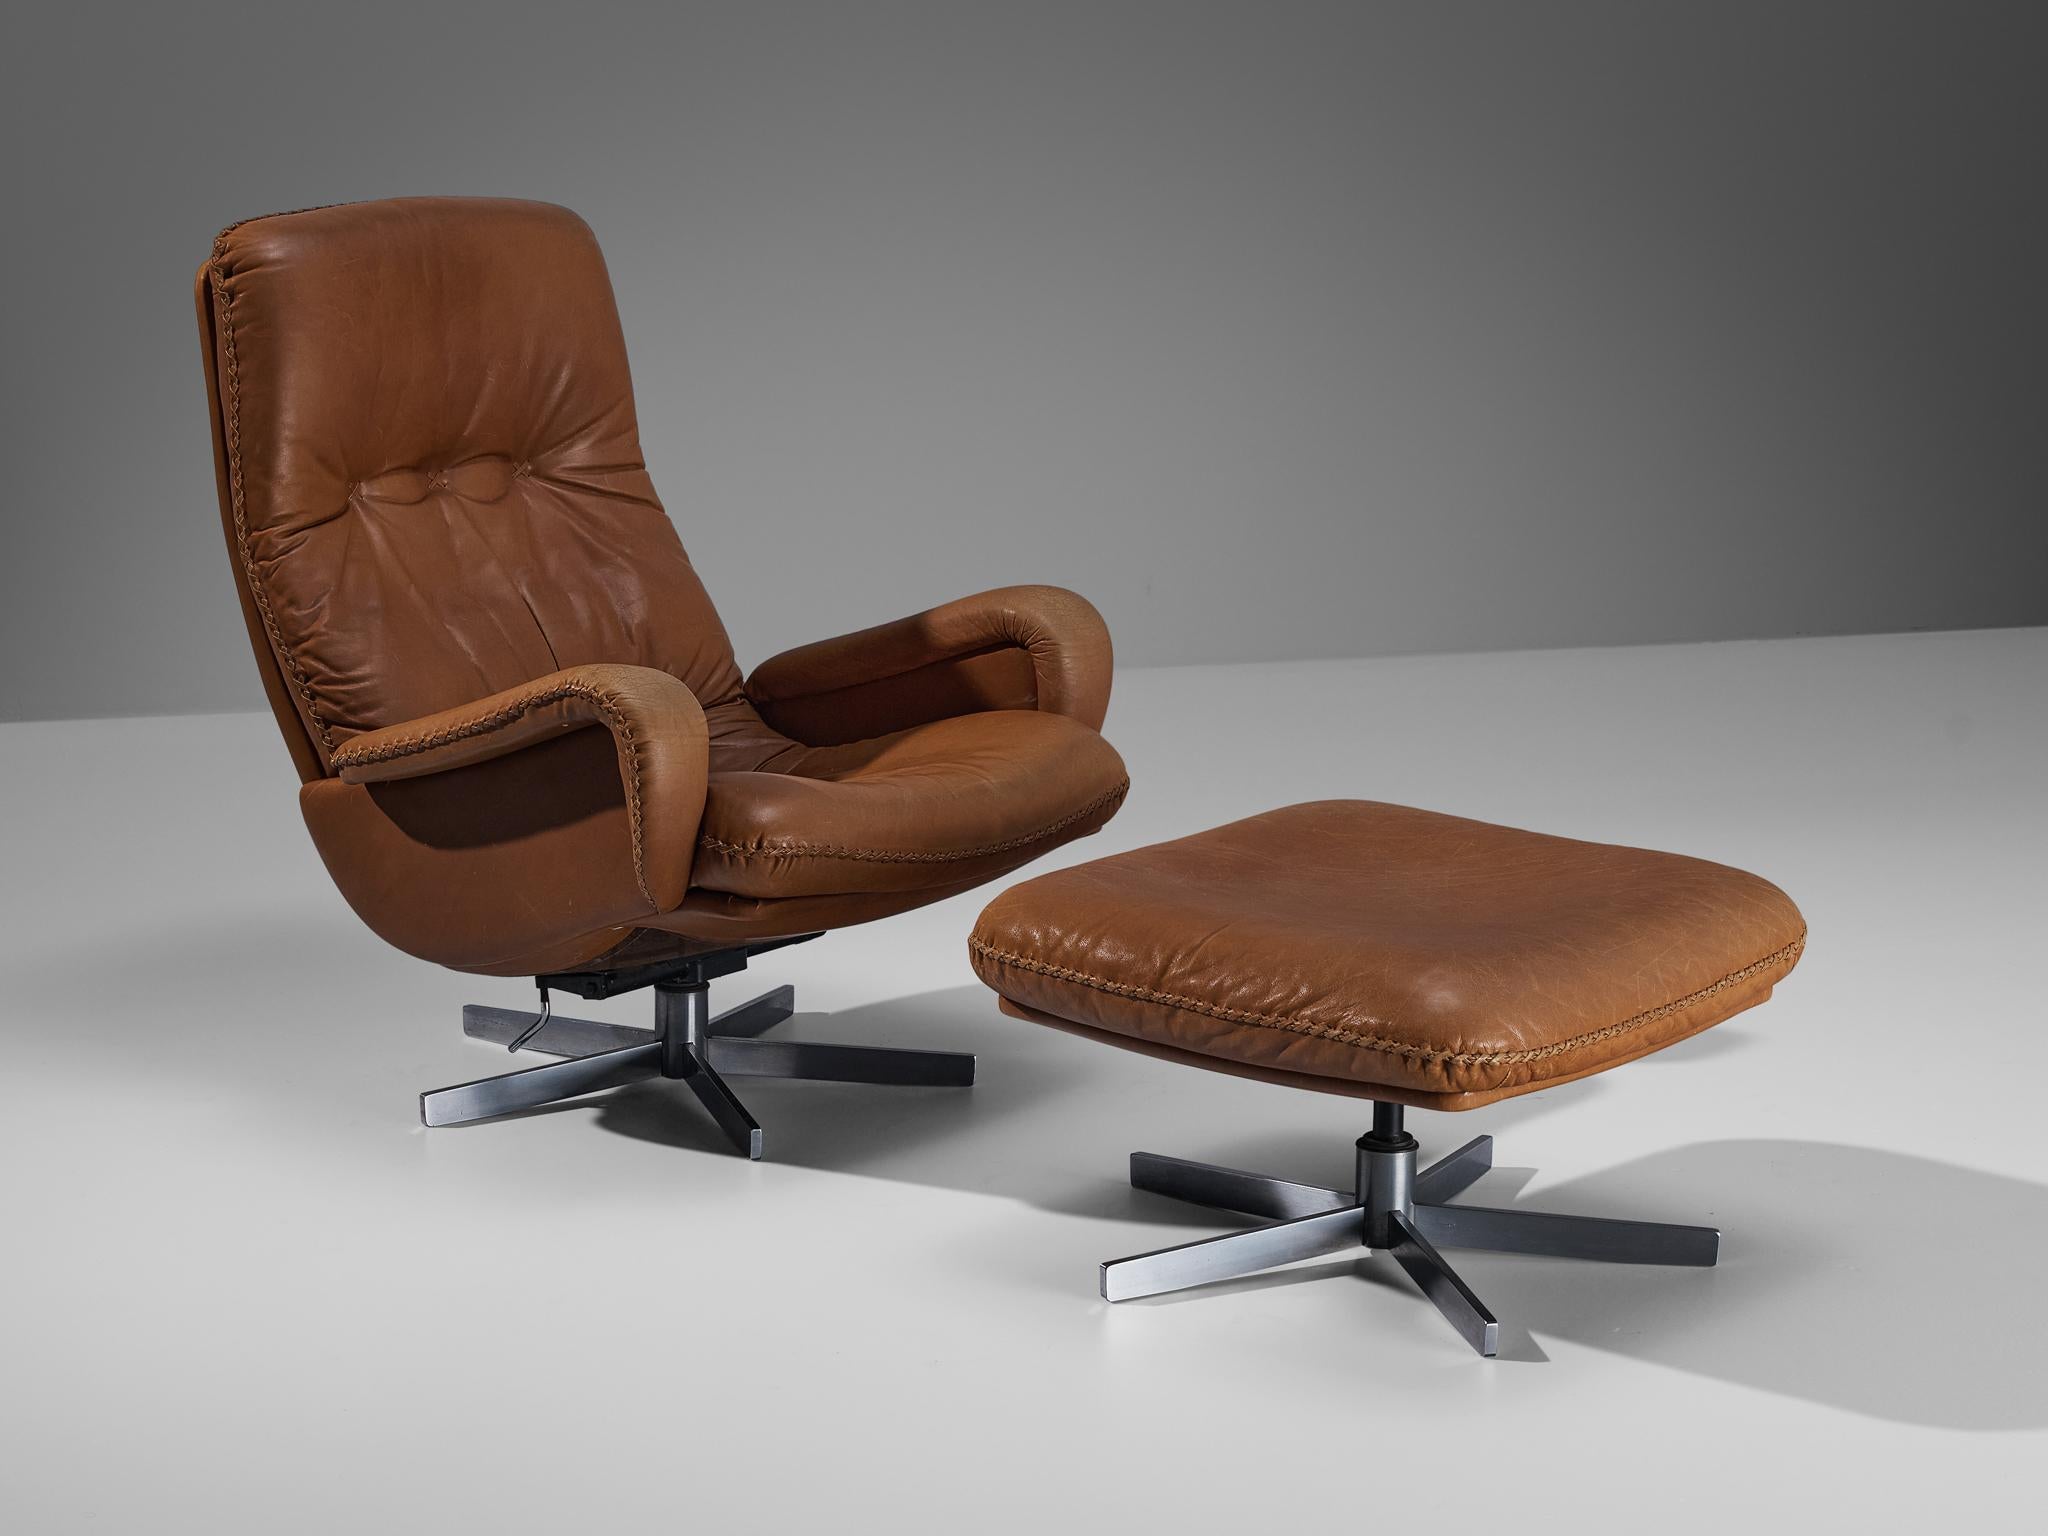 De Sede, ensemble chaise longue et ottoman, modèle ''S231'', cuir brun cognac, acier chromé, Suisse, années 1960.

Cette belle chaise de De Sede est basée sur une construction solide avec un large dossier et une assise profonde qui offre un grand